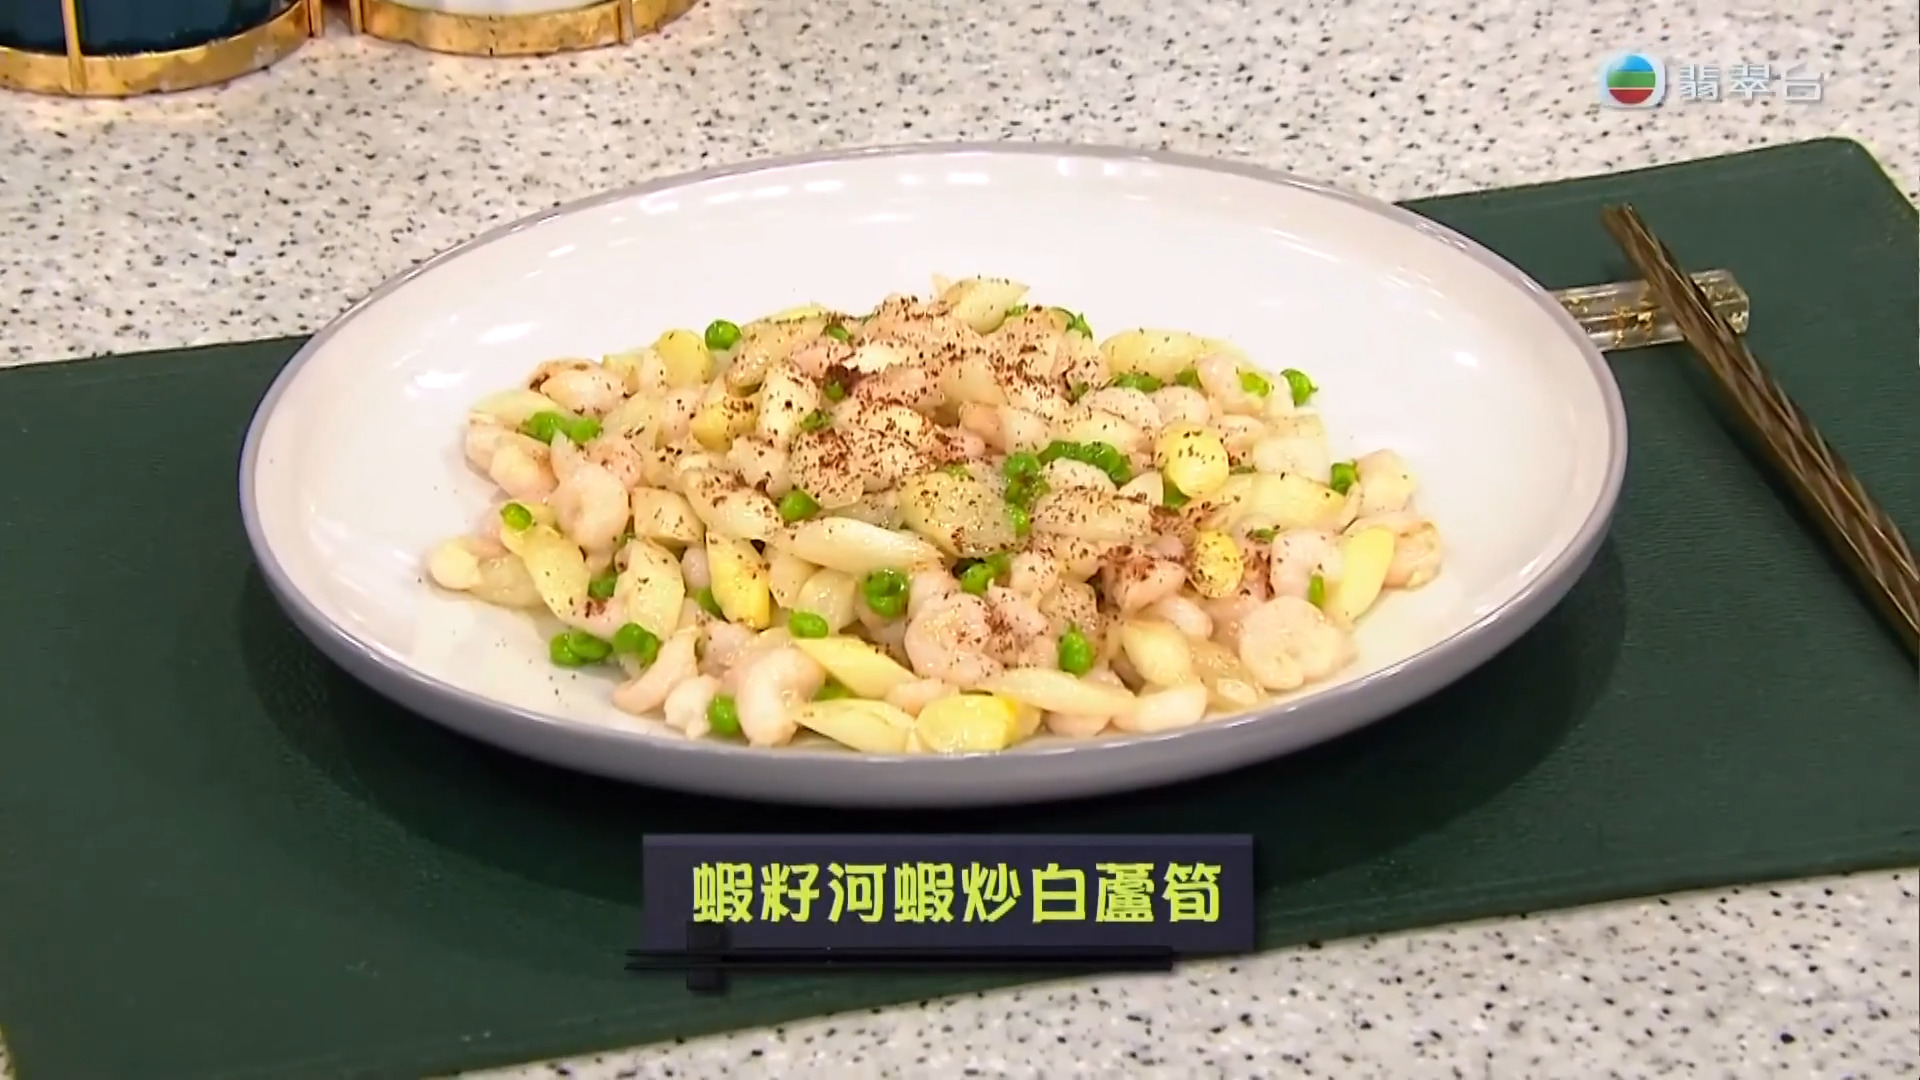 睇餸食飯-Whats For Dinner